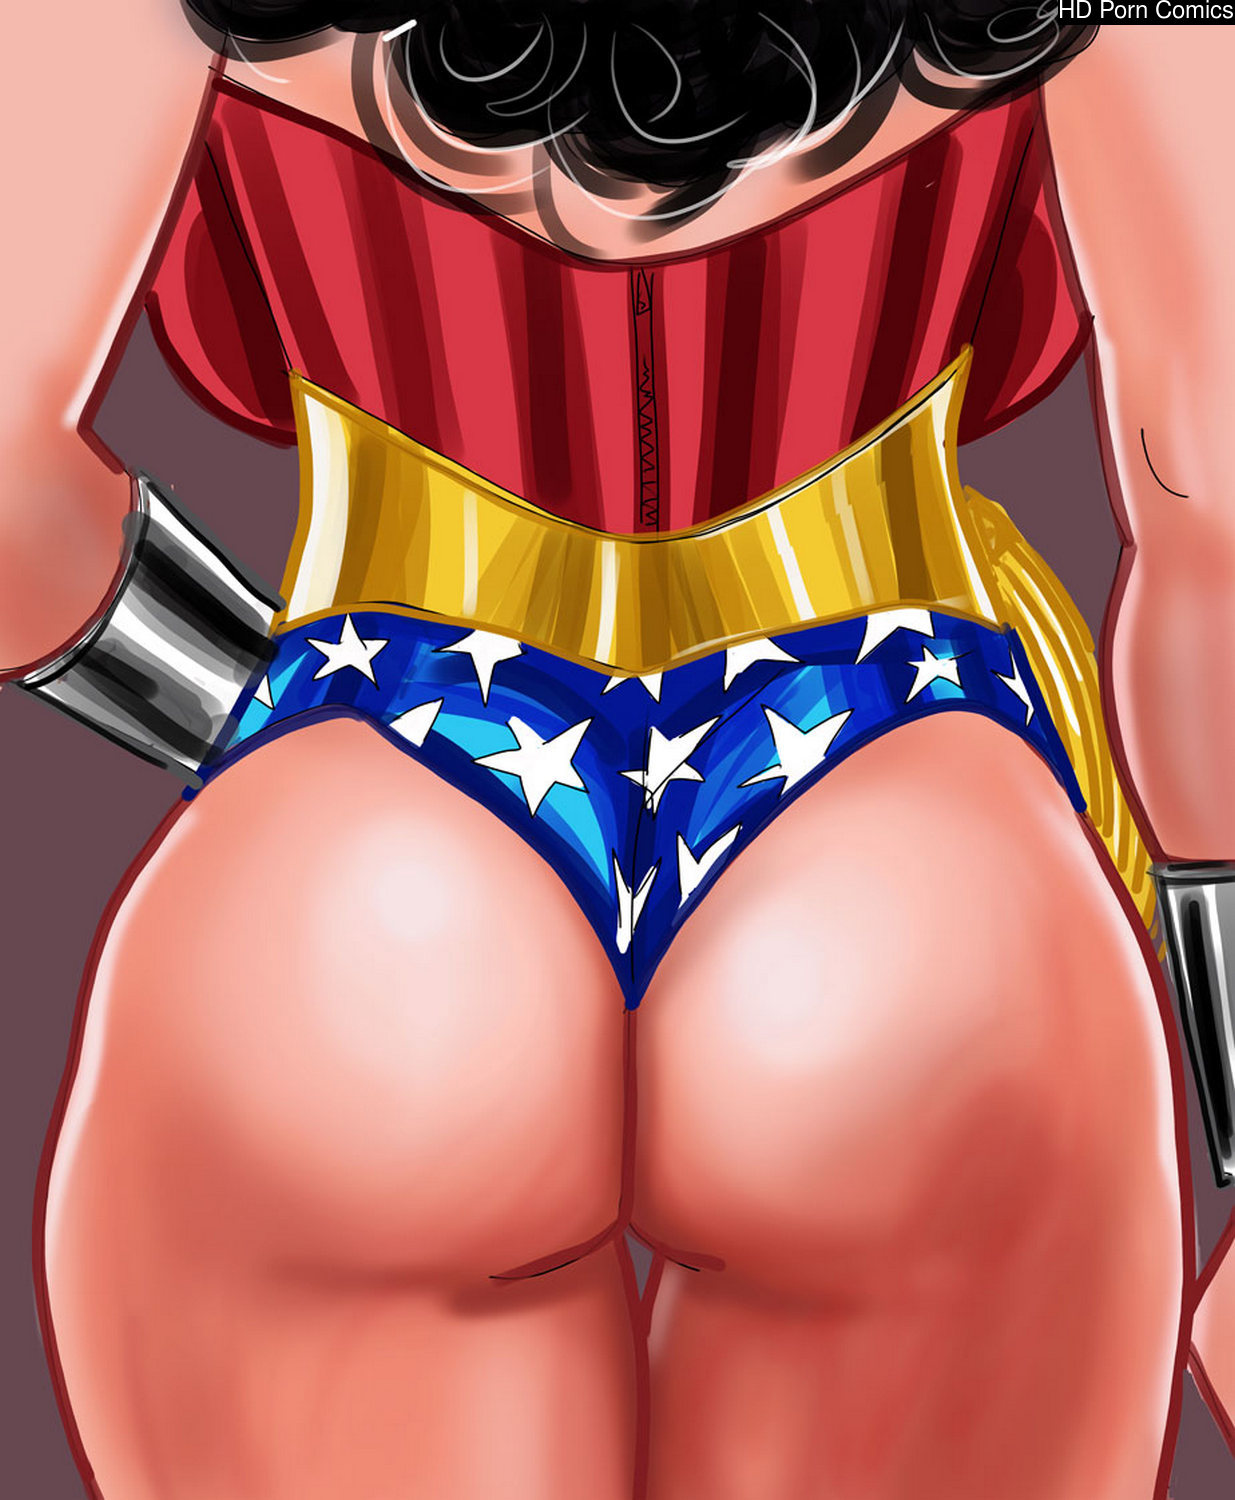 Wonder Woman In Sloppy Ending comic porn | HD Porn Comics